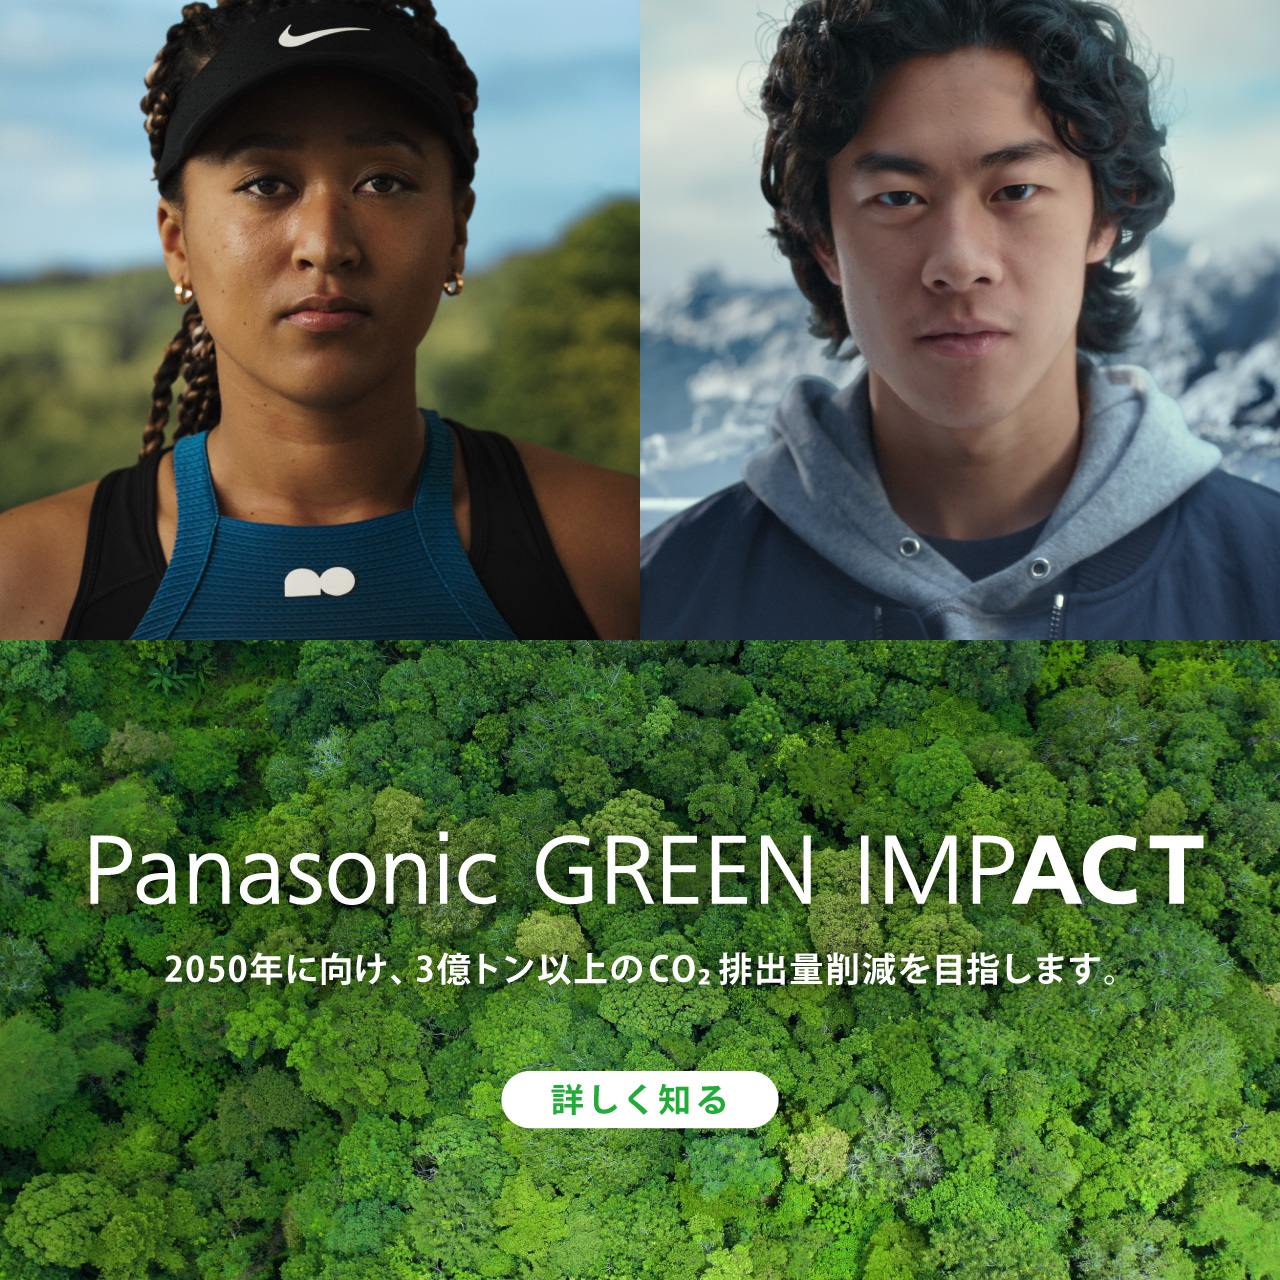 Panasonic GREEN IMPACT 2050年に向け、3億トン以上のCO2排出量削減を目指します。